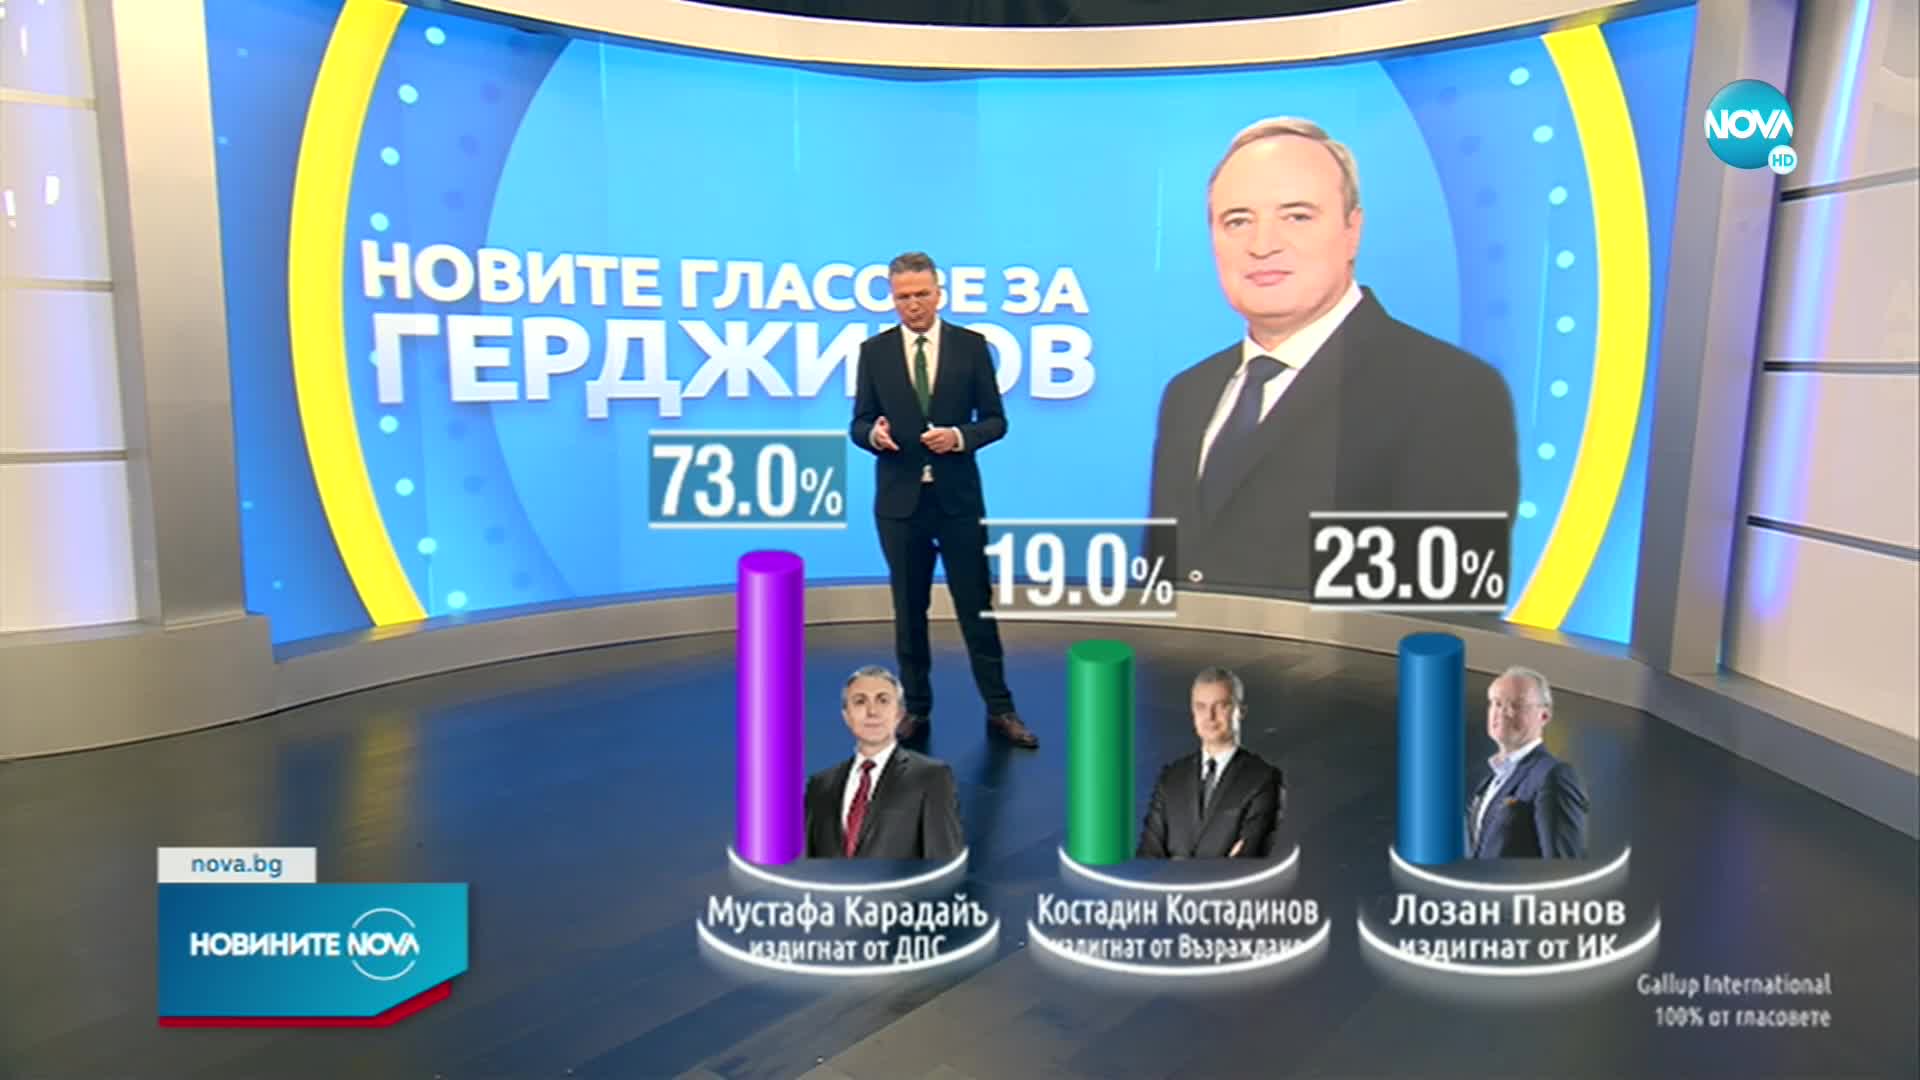 ОФИЦИАЛНО: Румен Радев печели изборите